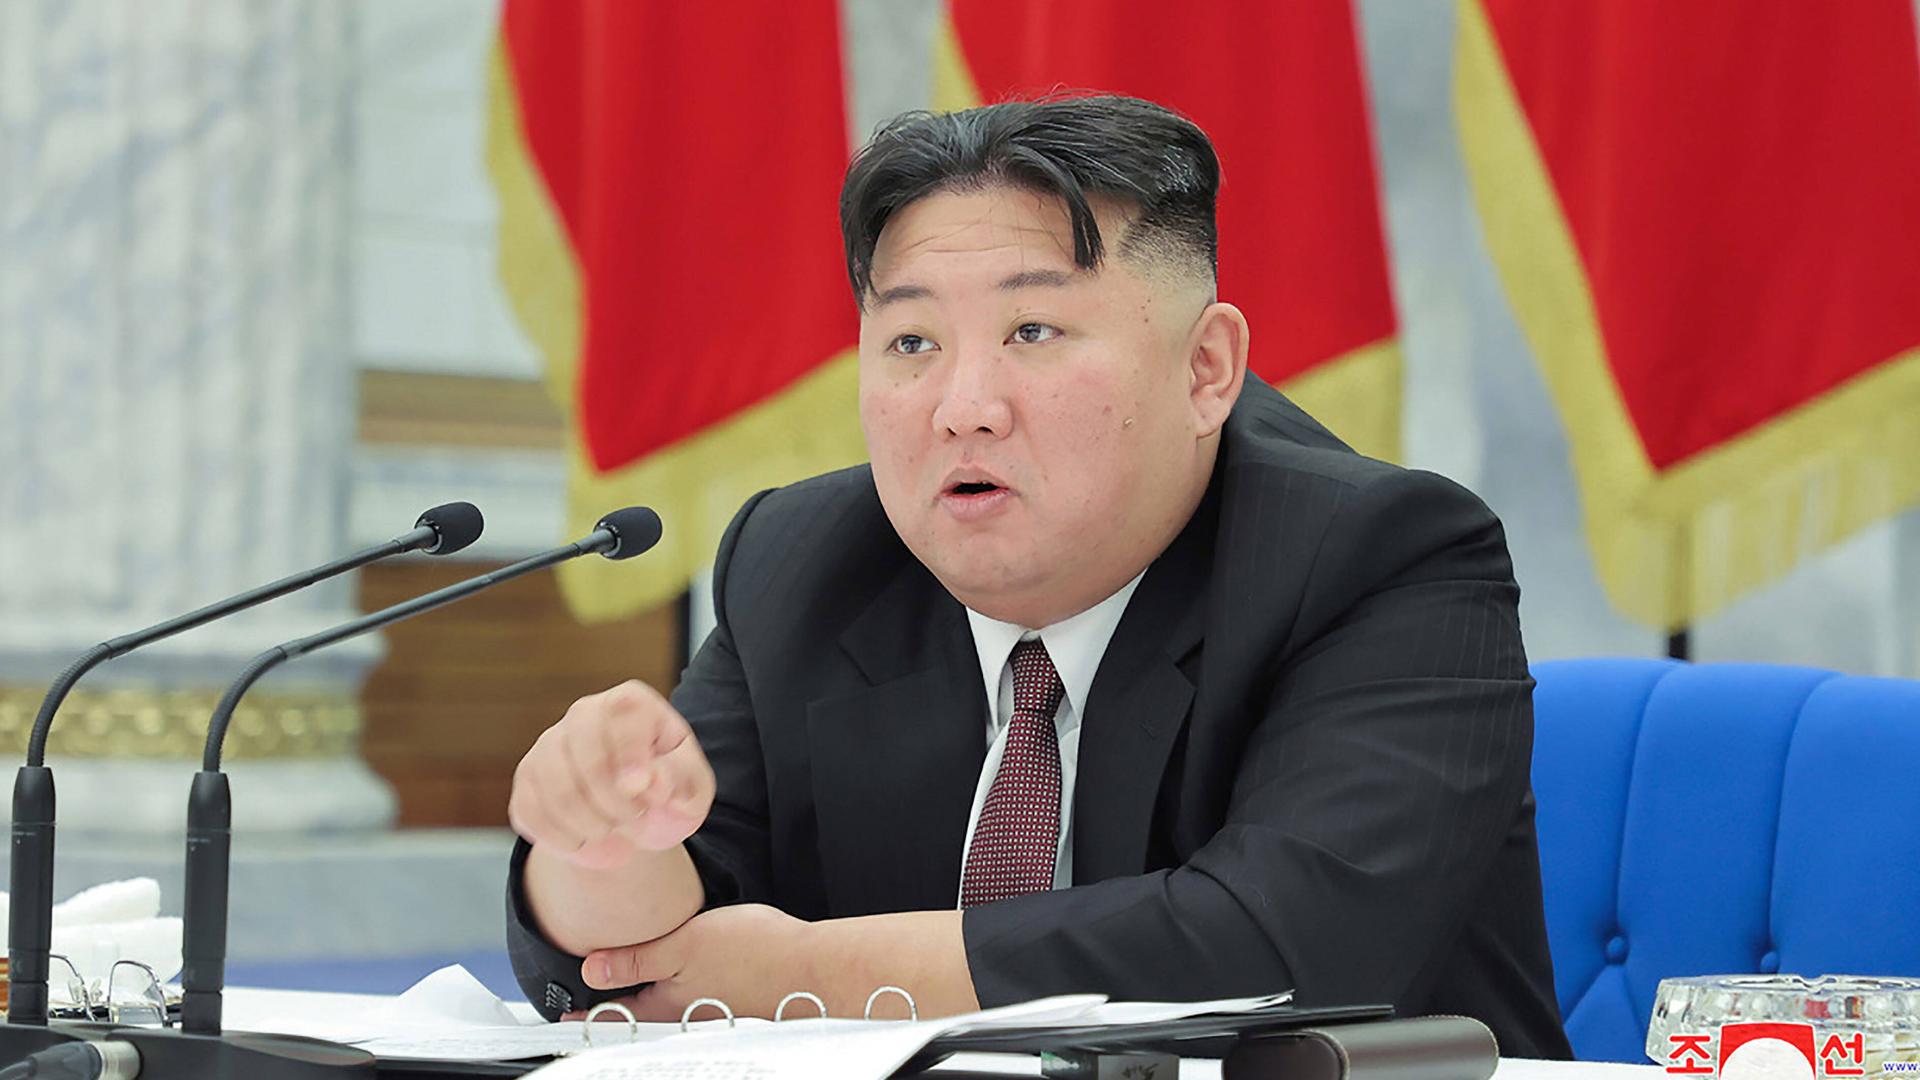 Nordkorea-Experte Ballbach - „Abschreckung alleine führt nicht zum gewünschten Ziel der Denuklearisierung“